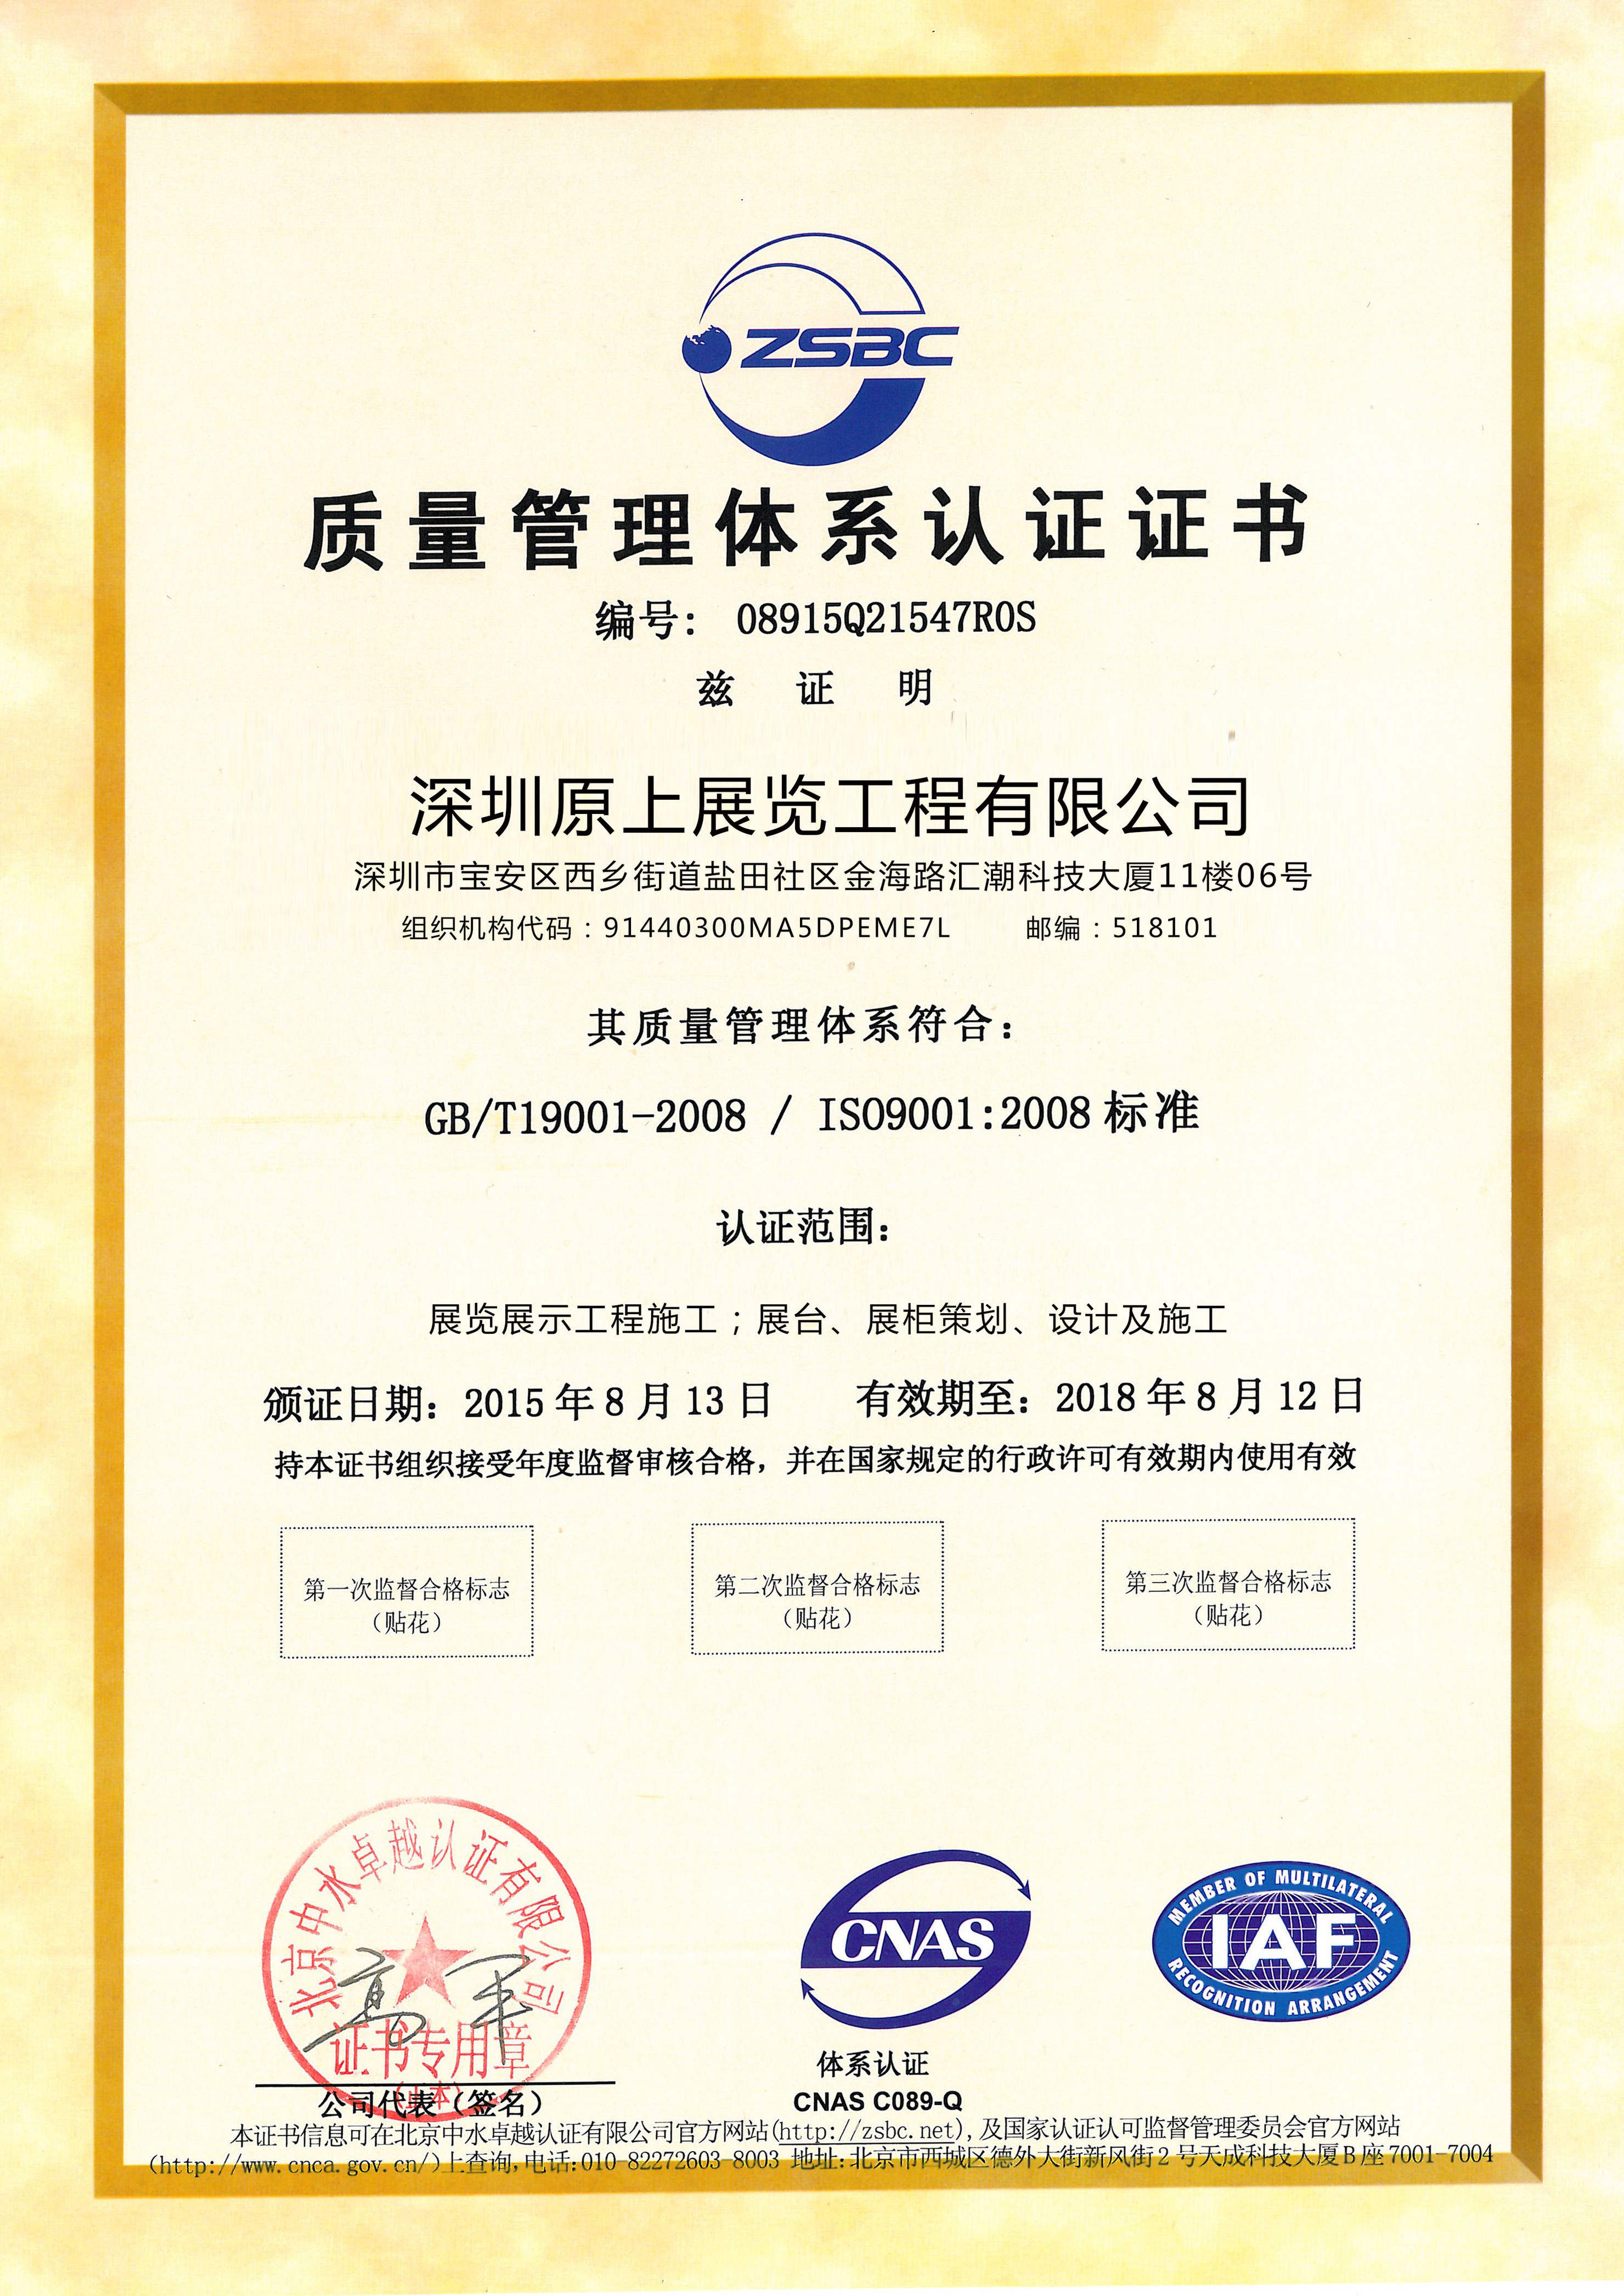 原上展览-质量管理体系认证证书_gaitubao_com_2970x4200_gaitubao_com_2960x4186.jpg